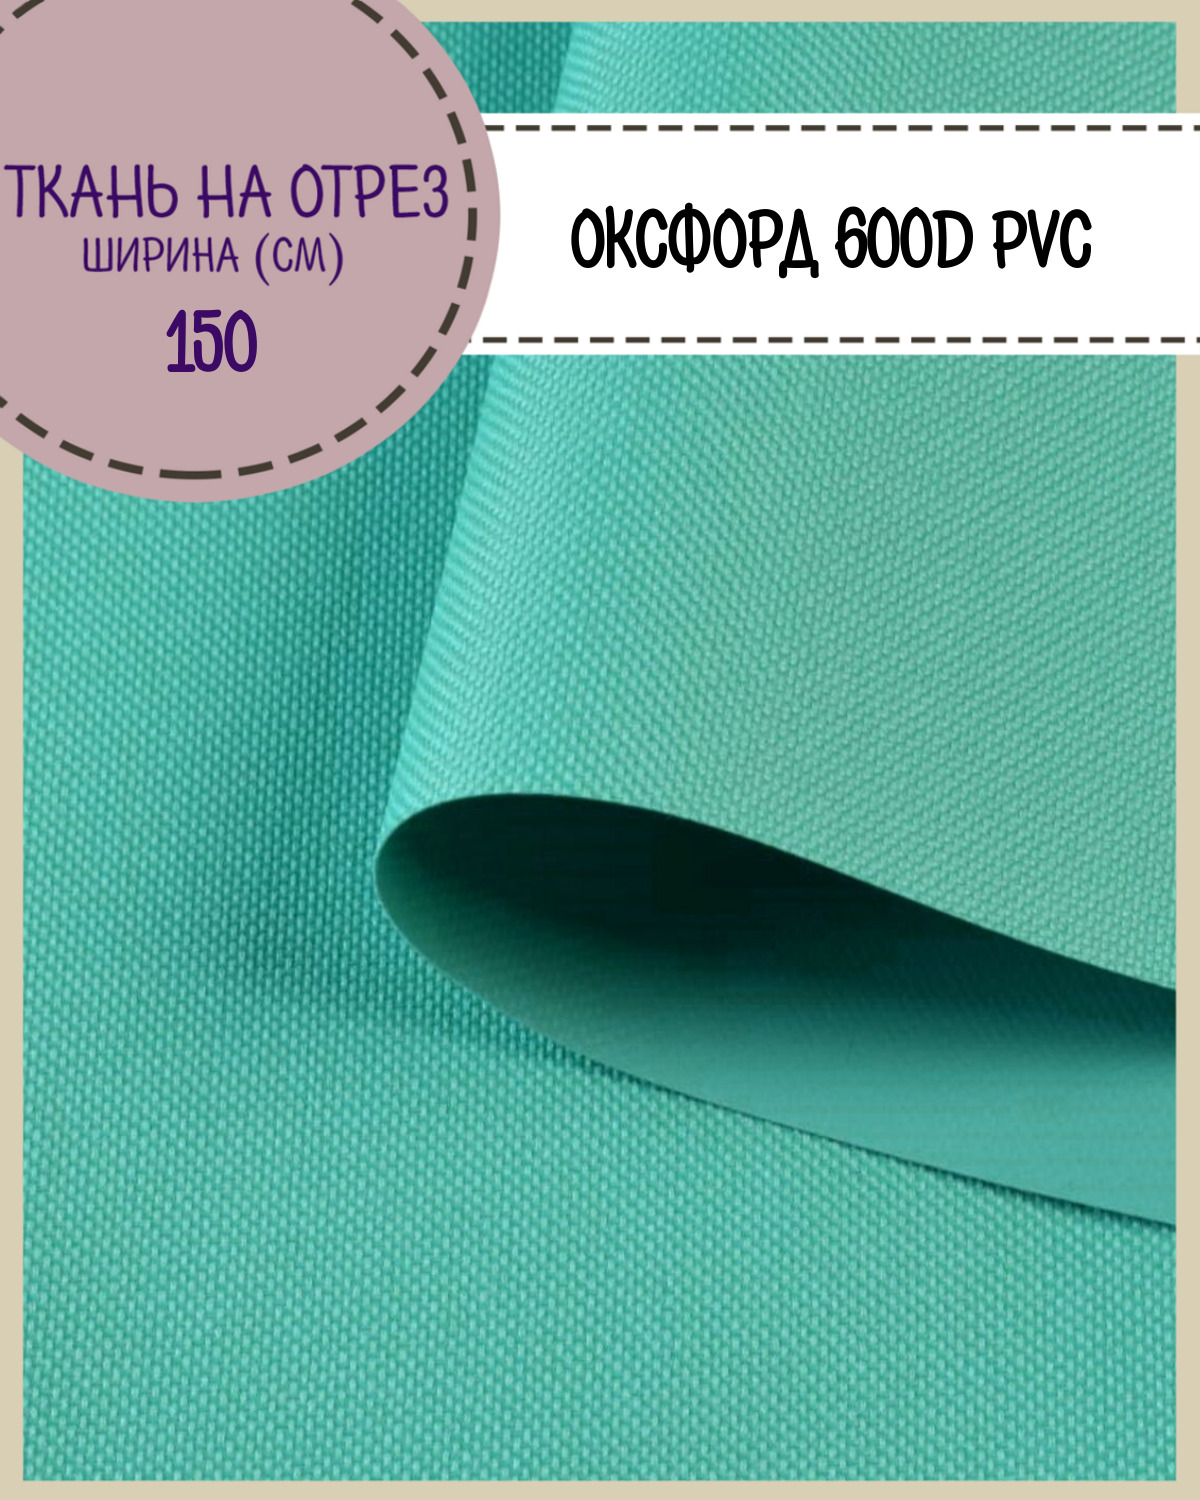 Ткань Оксфорд Любодом 600D PVC водоотталкивающая, цв. бирюзовый, на отрез, 150*100см